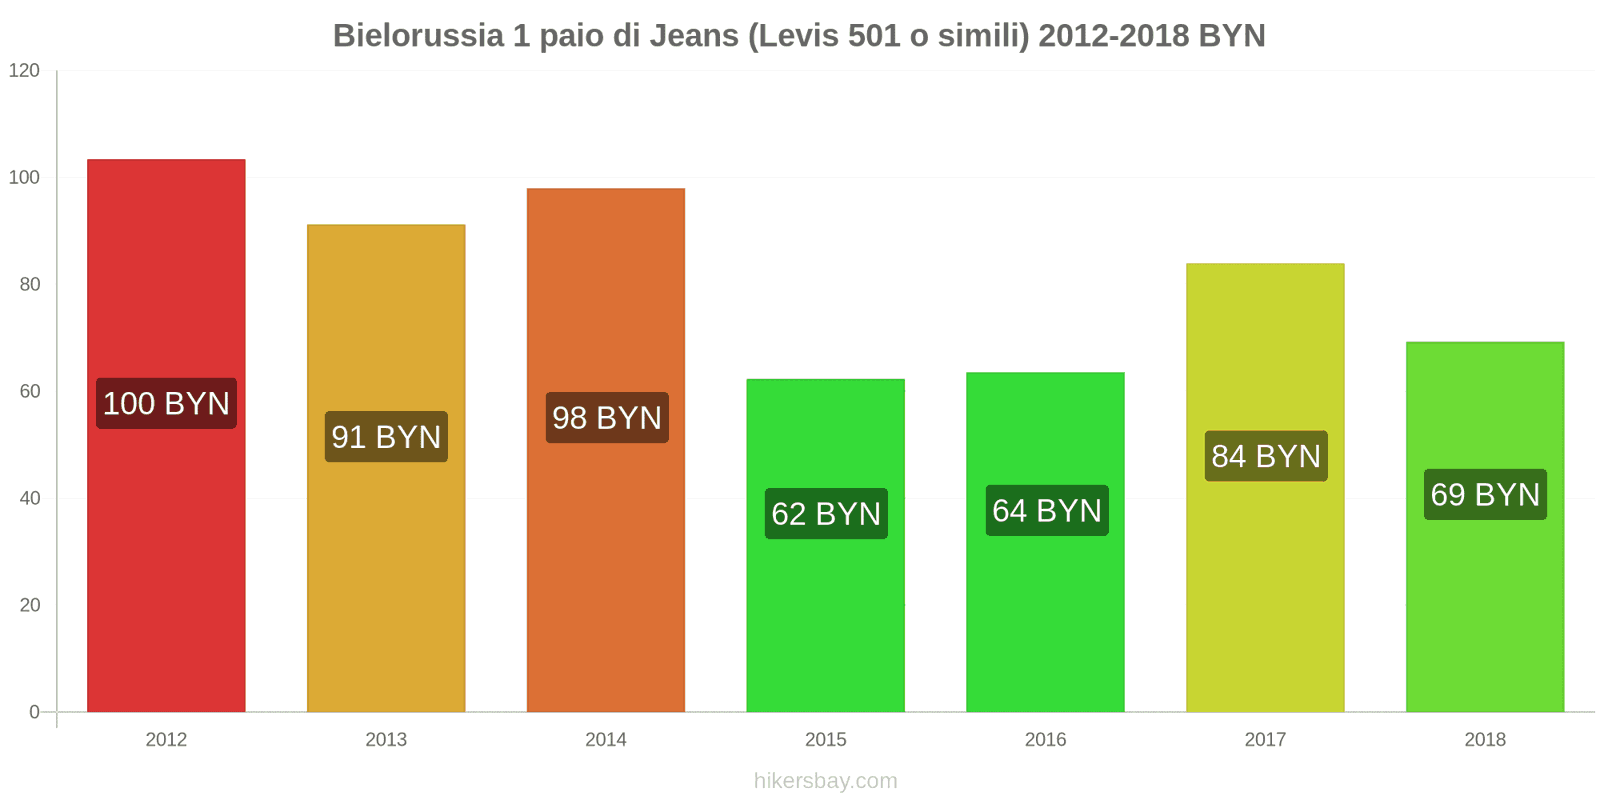 Bielorussia cambi di prezzo 1 paio di jeans (Levis 501 o simili) hikersbay.com